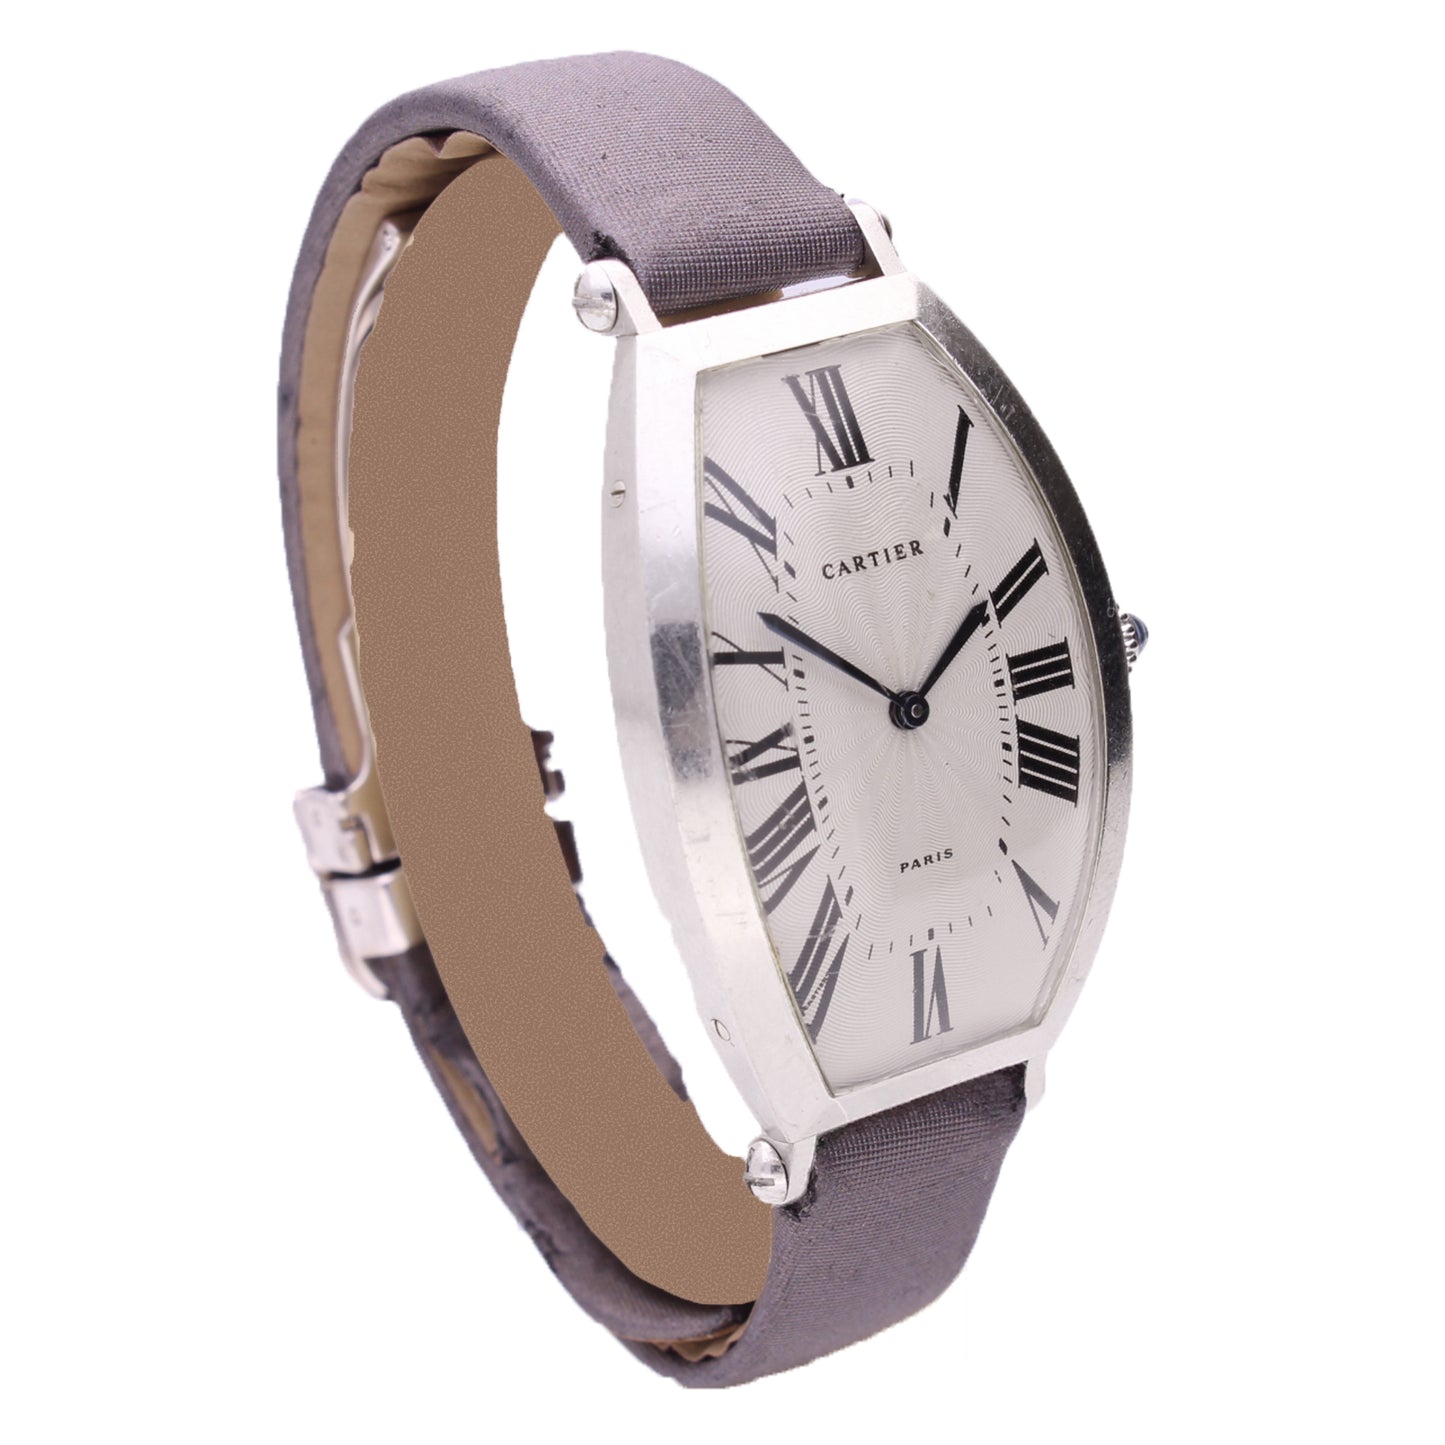 Platinum Cartier "Tonneau" wristwatch. Made 1990's